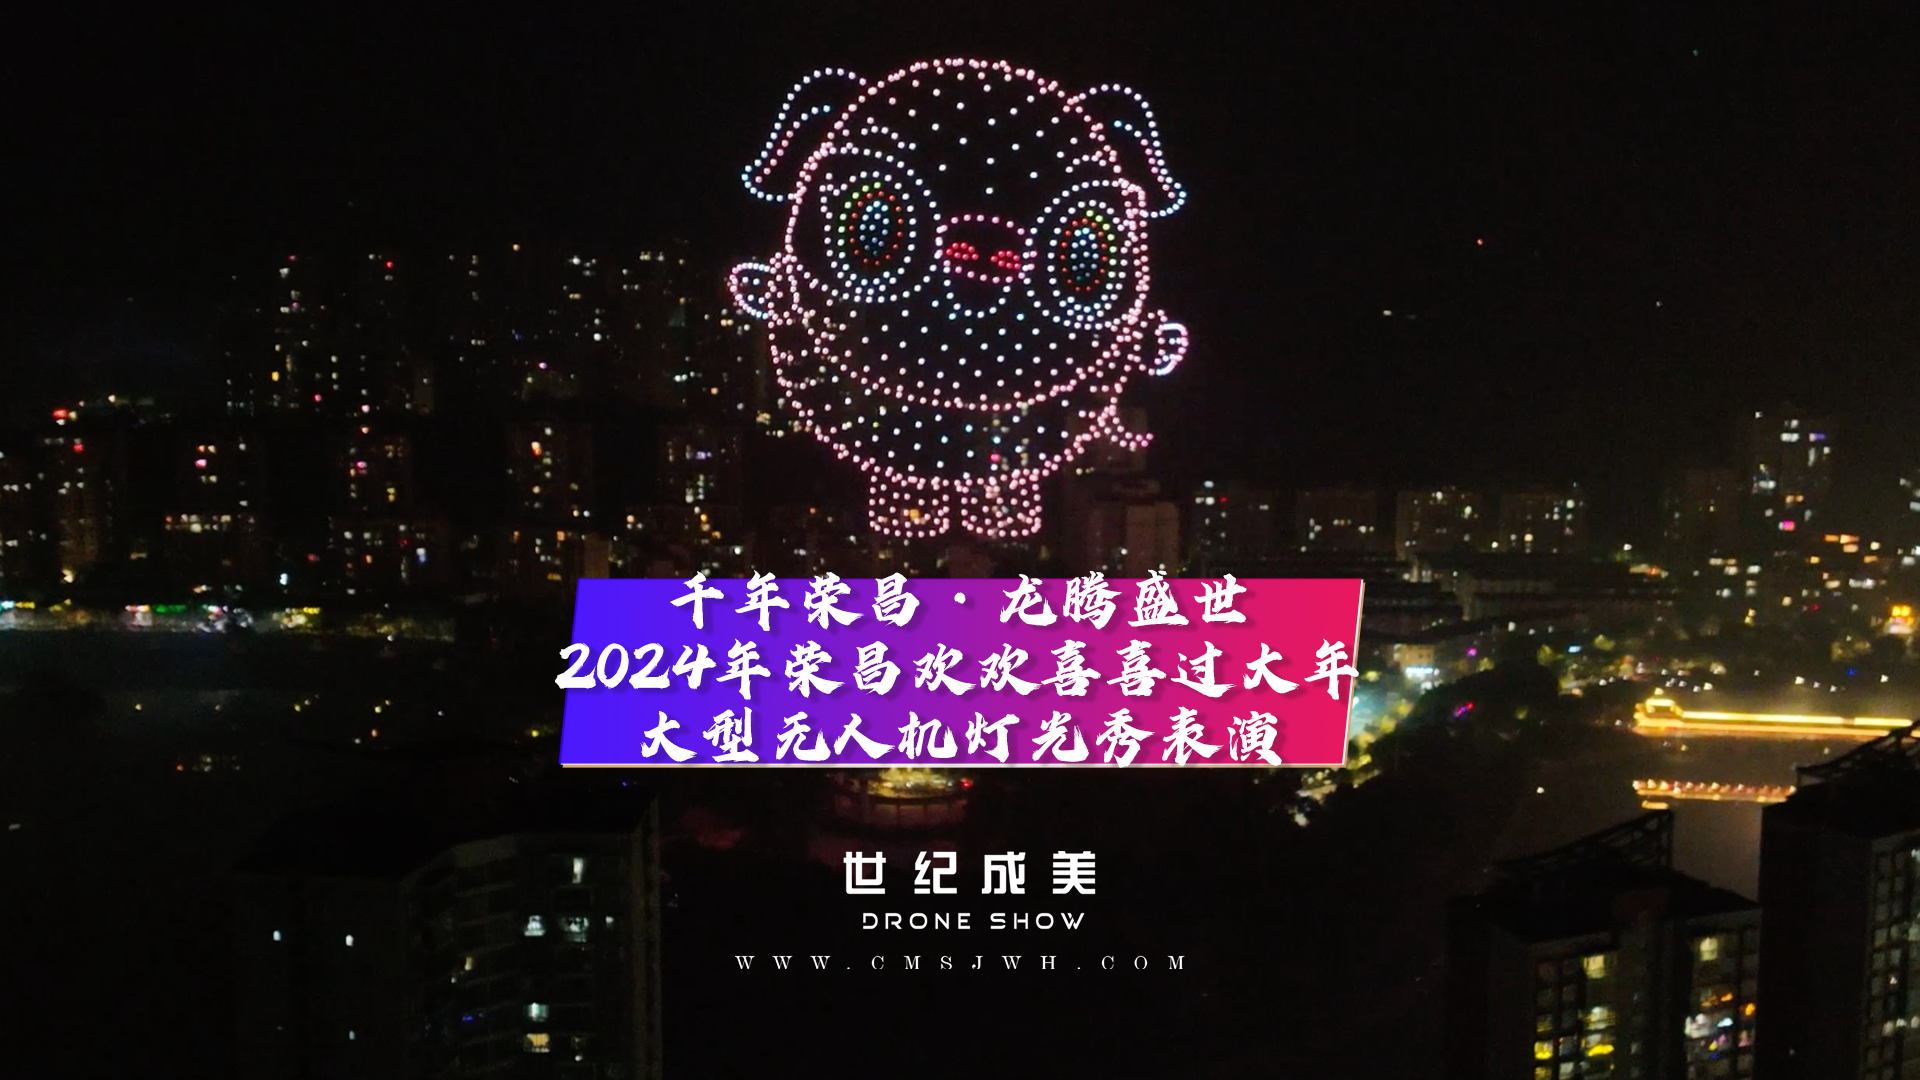 千年荣昌·龙腾盛世 2024年荣昌四大景区欢欢喜喜过大年，大型无人机灯光秀点亮中江夜空。